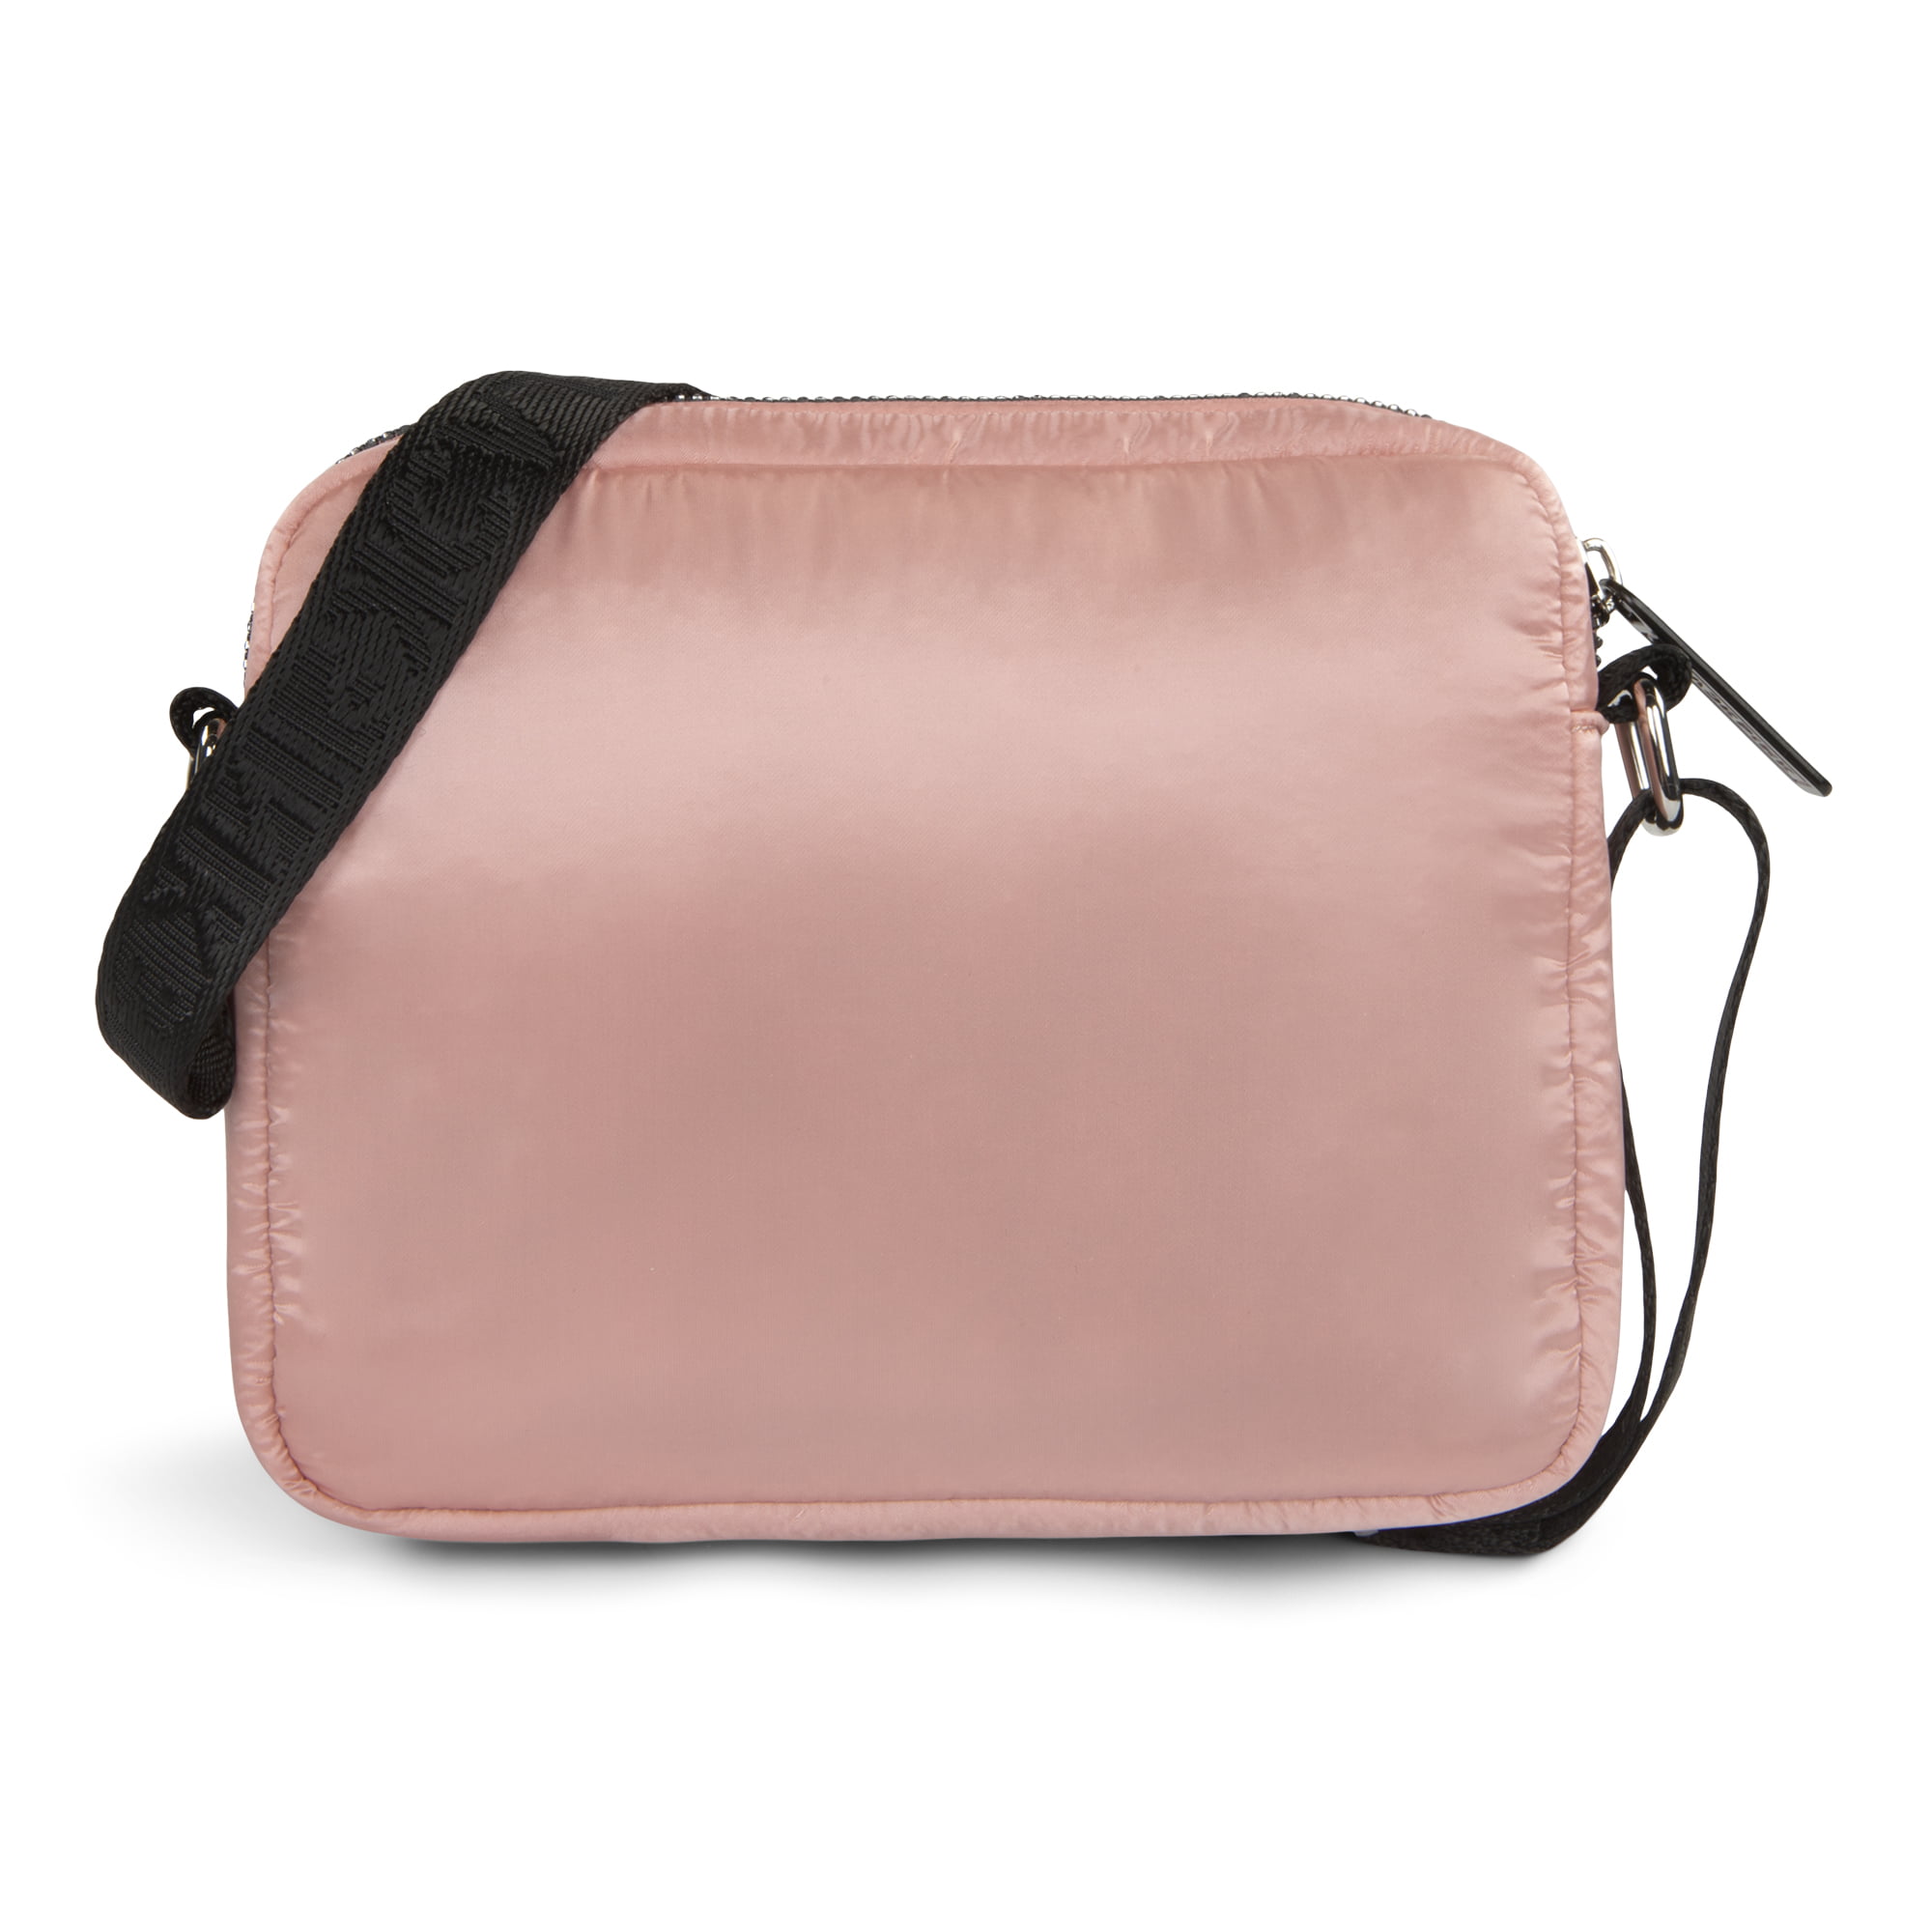 BLACKPINK - Quartz Crossbody Bag for Teen Girls / Women - Pink